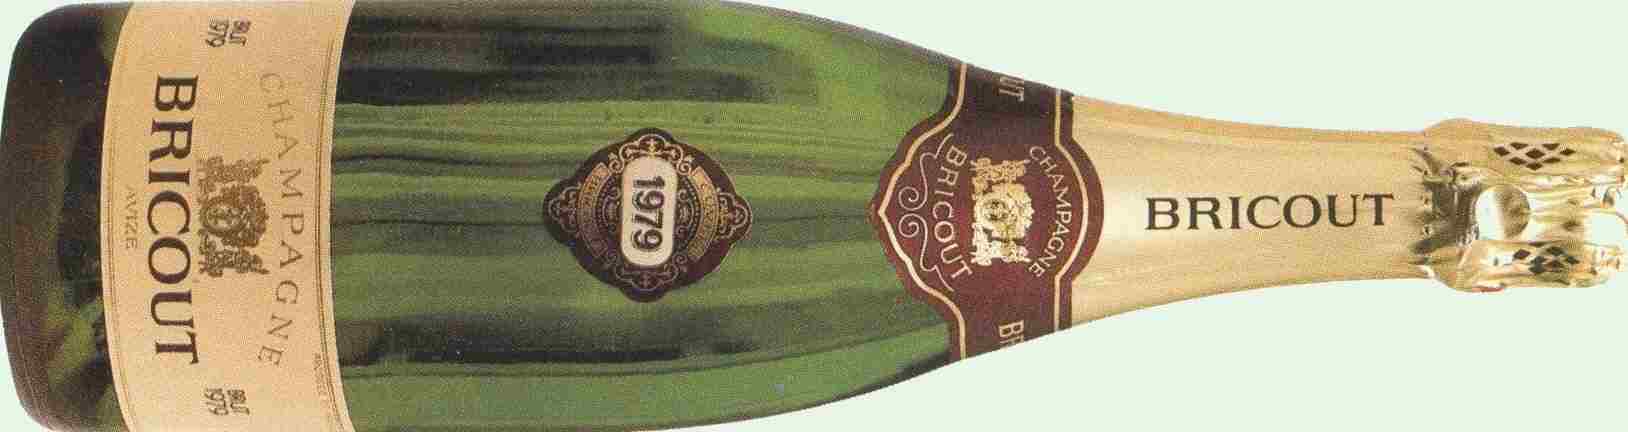 Histoire du Champagne Bricout fondé en 1966 ------> 